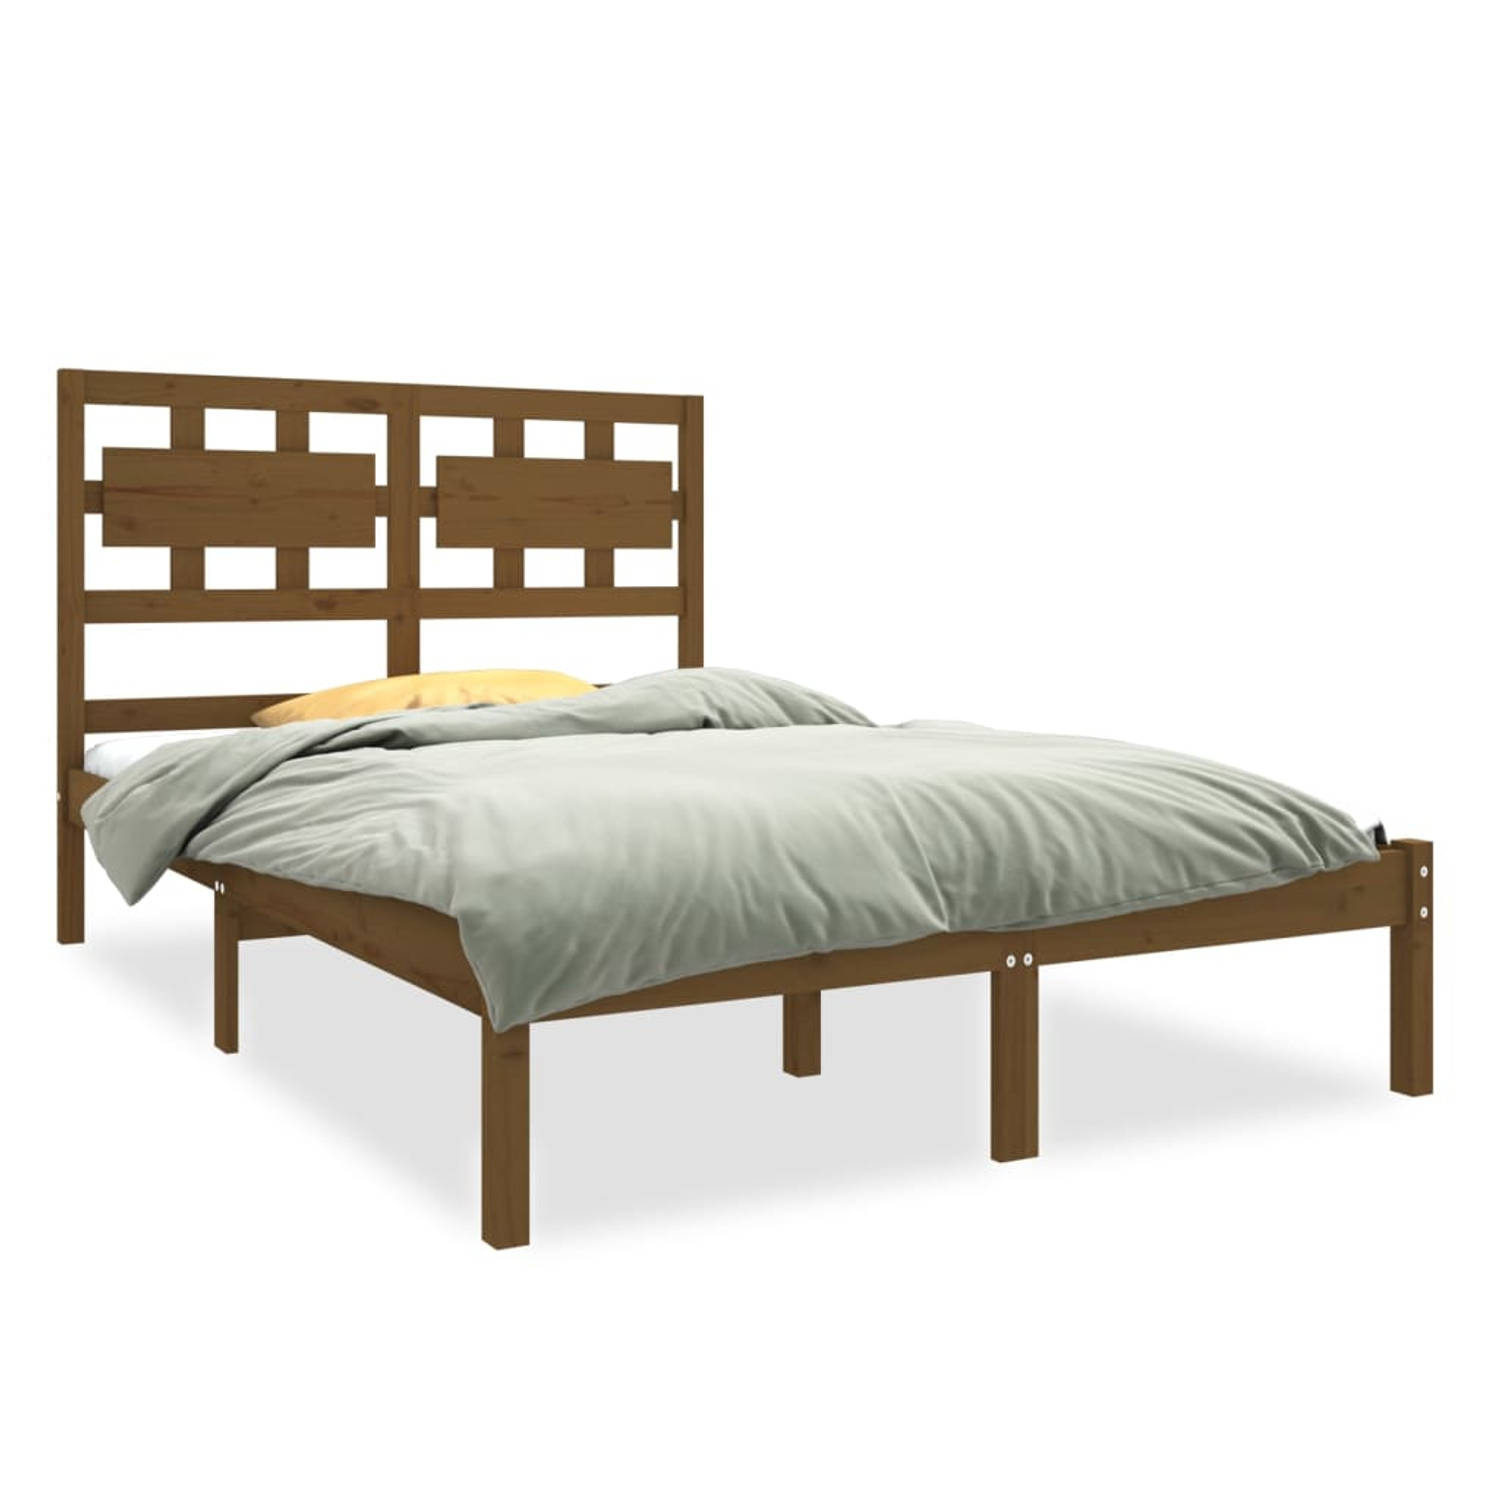 The Living Store Bedframe massief hout honingbruin 140x190 cm - Bedframe - Bedframes - Tweepersoonsbed - Bed - Bedombouw - Dubbel Bed - Frame - Bed Frame - Ledikant - Bedframe Met